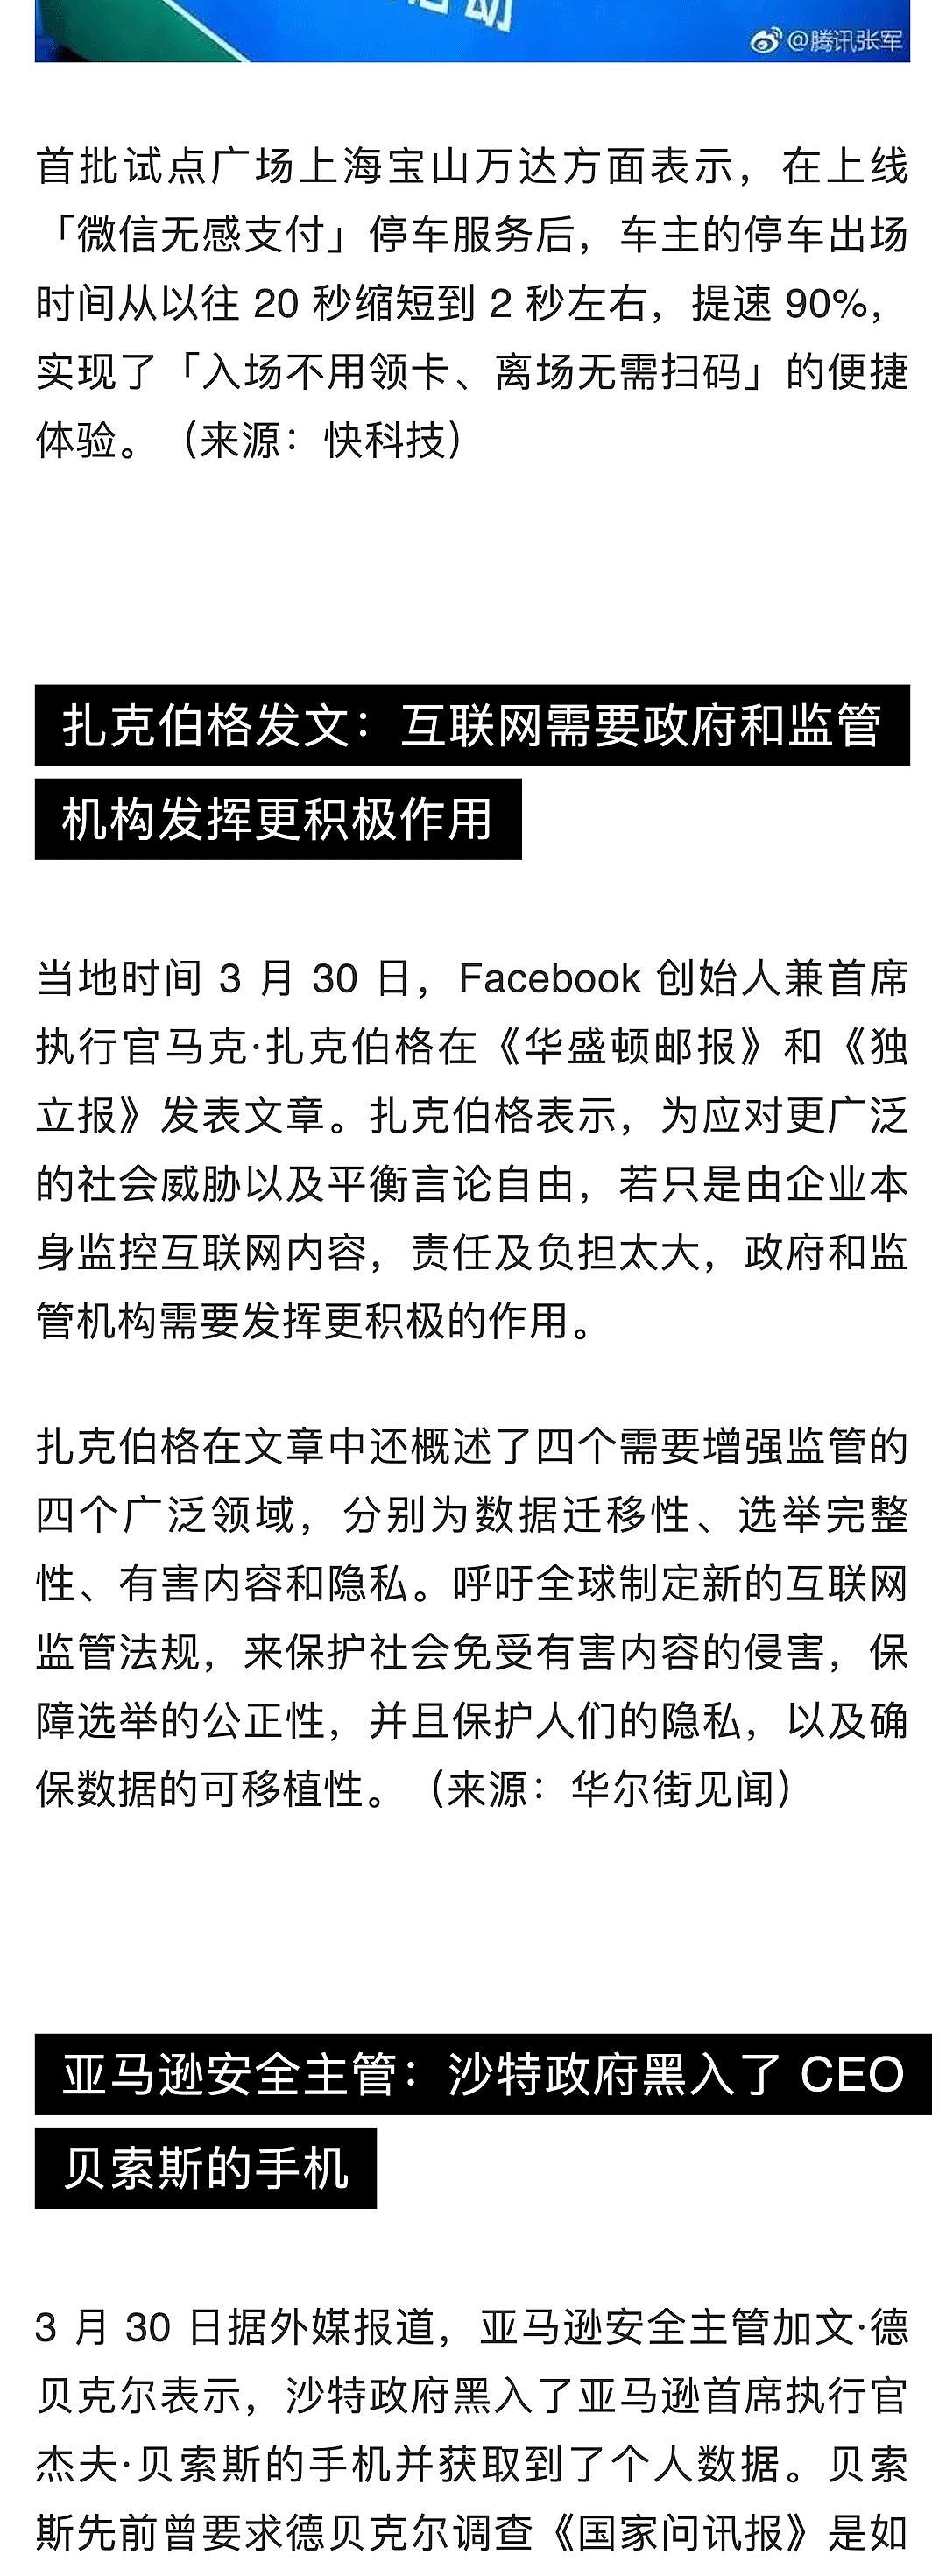 苹果中国全线降价约 3%；熊猫直播宣布正式关闭；苹果挖角特斯拉工程副总裁 | 极客早知道 - 2